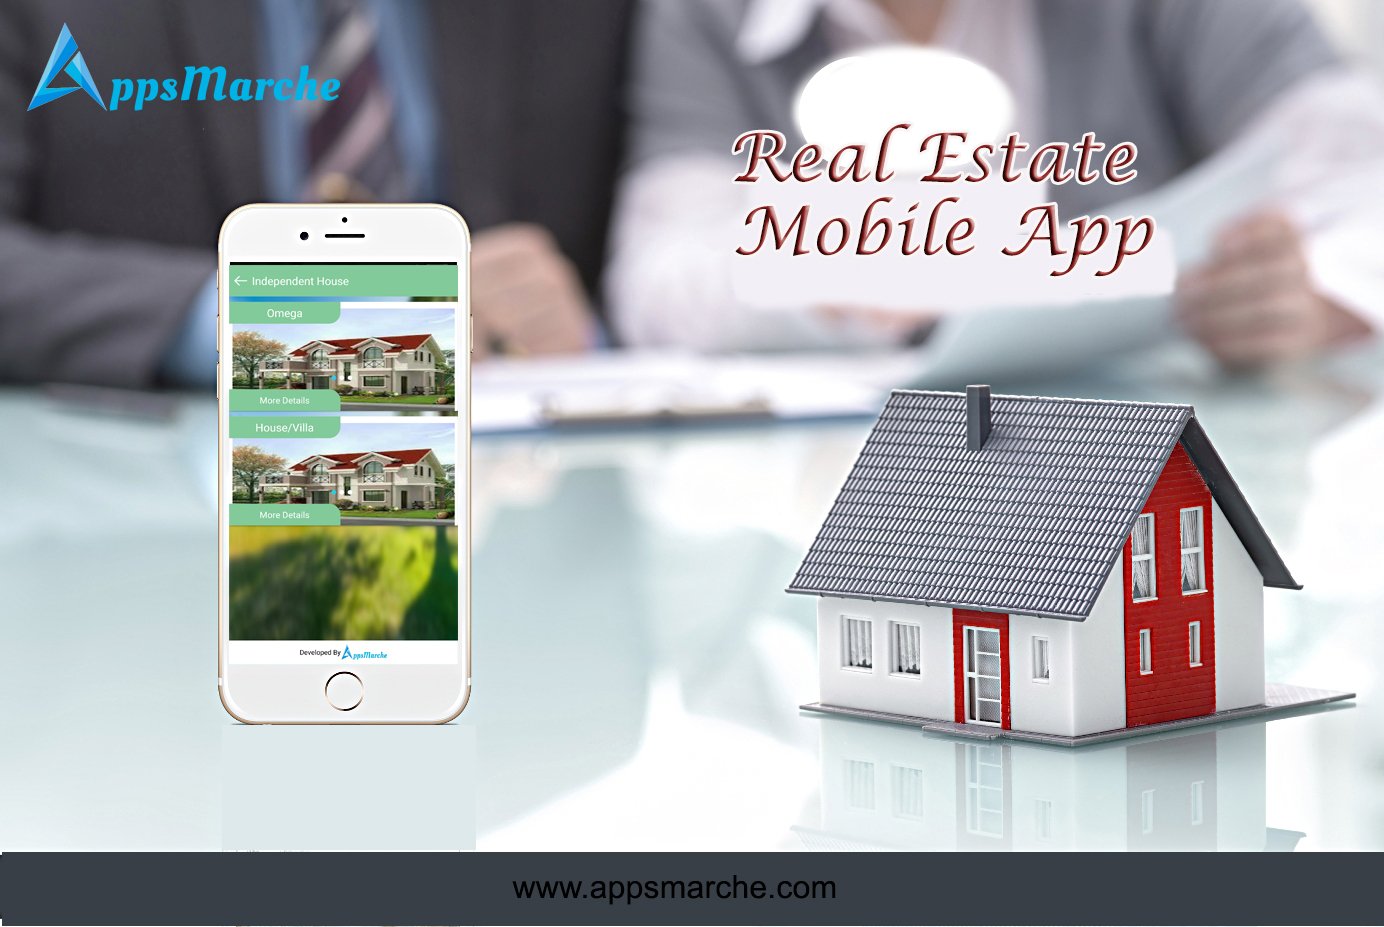 real estate mobile app for property business, best real estate mobile app, property mobile app, real estate agent mobile app, mobile app builder, online apps market, appsmarket